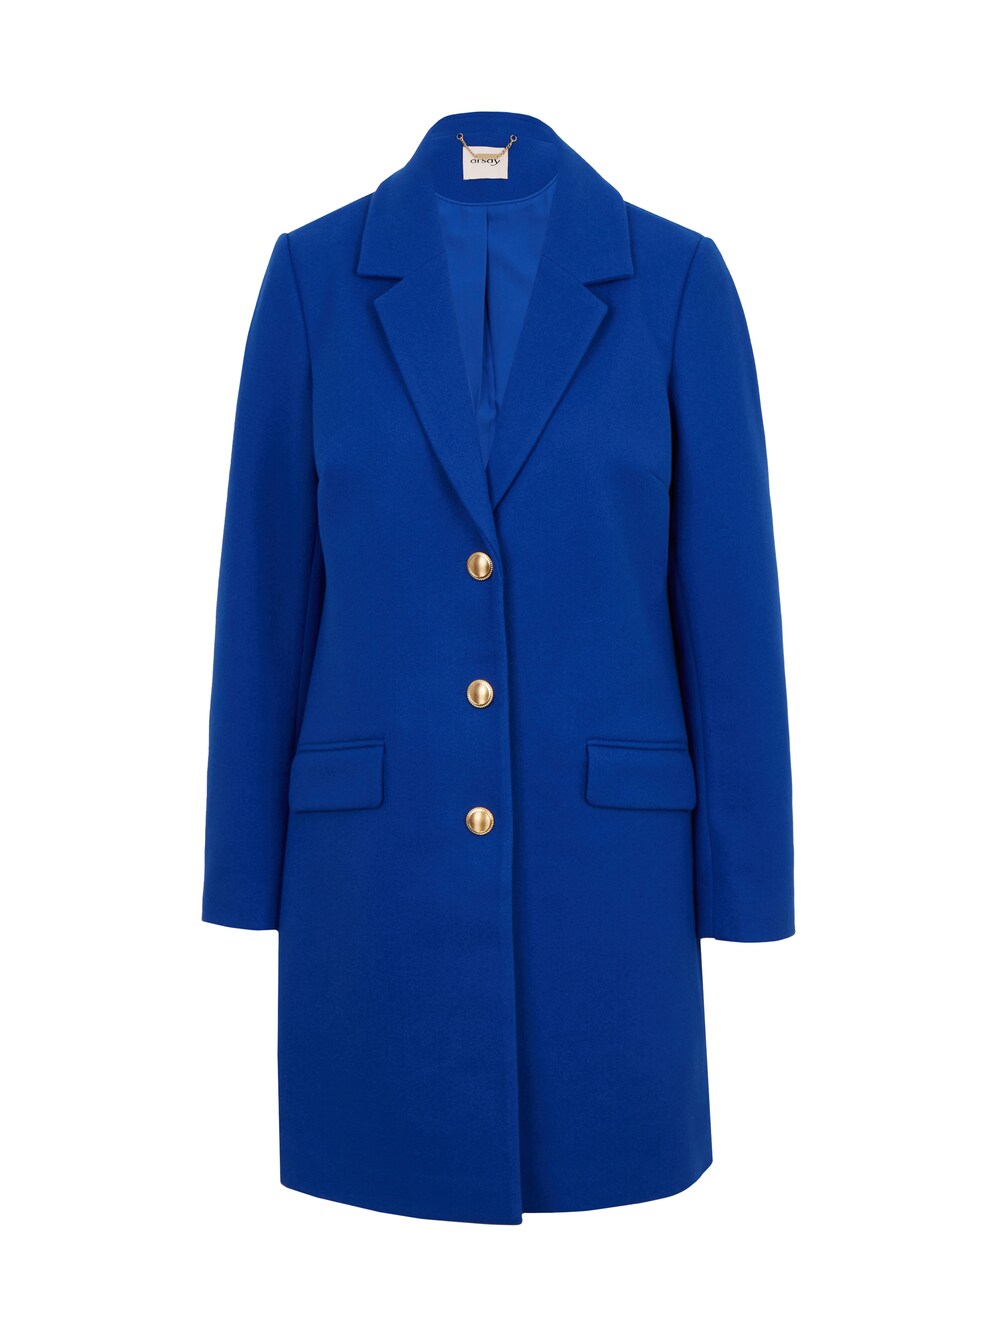 Межсезонное пальто Orsay, королевский синий